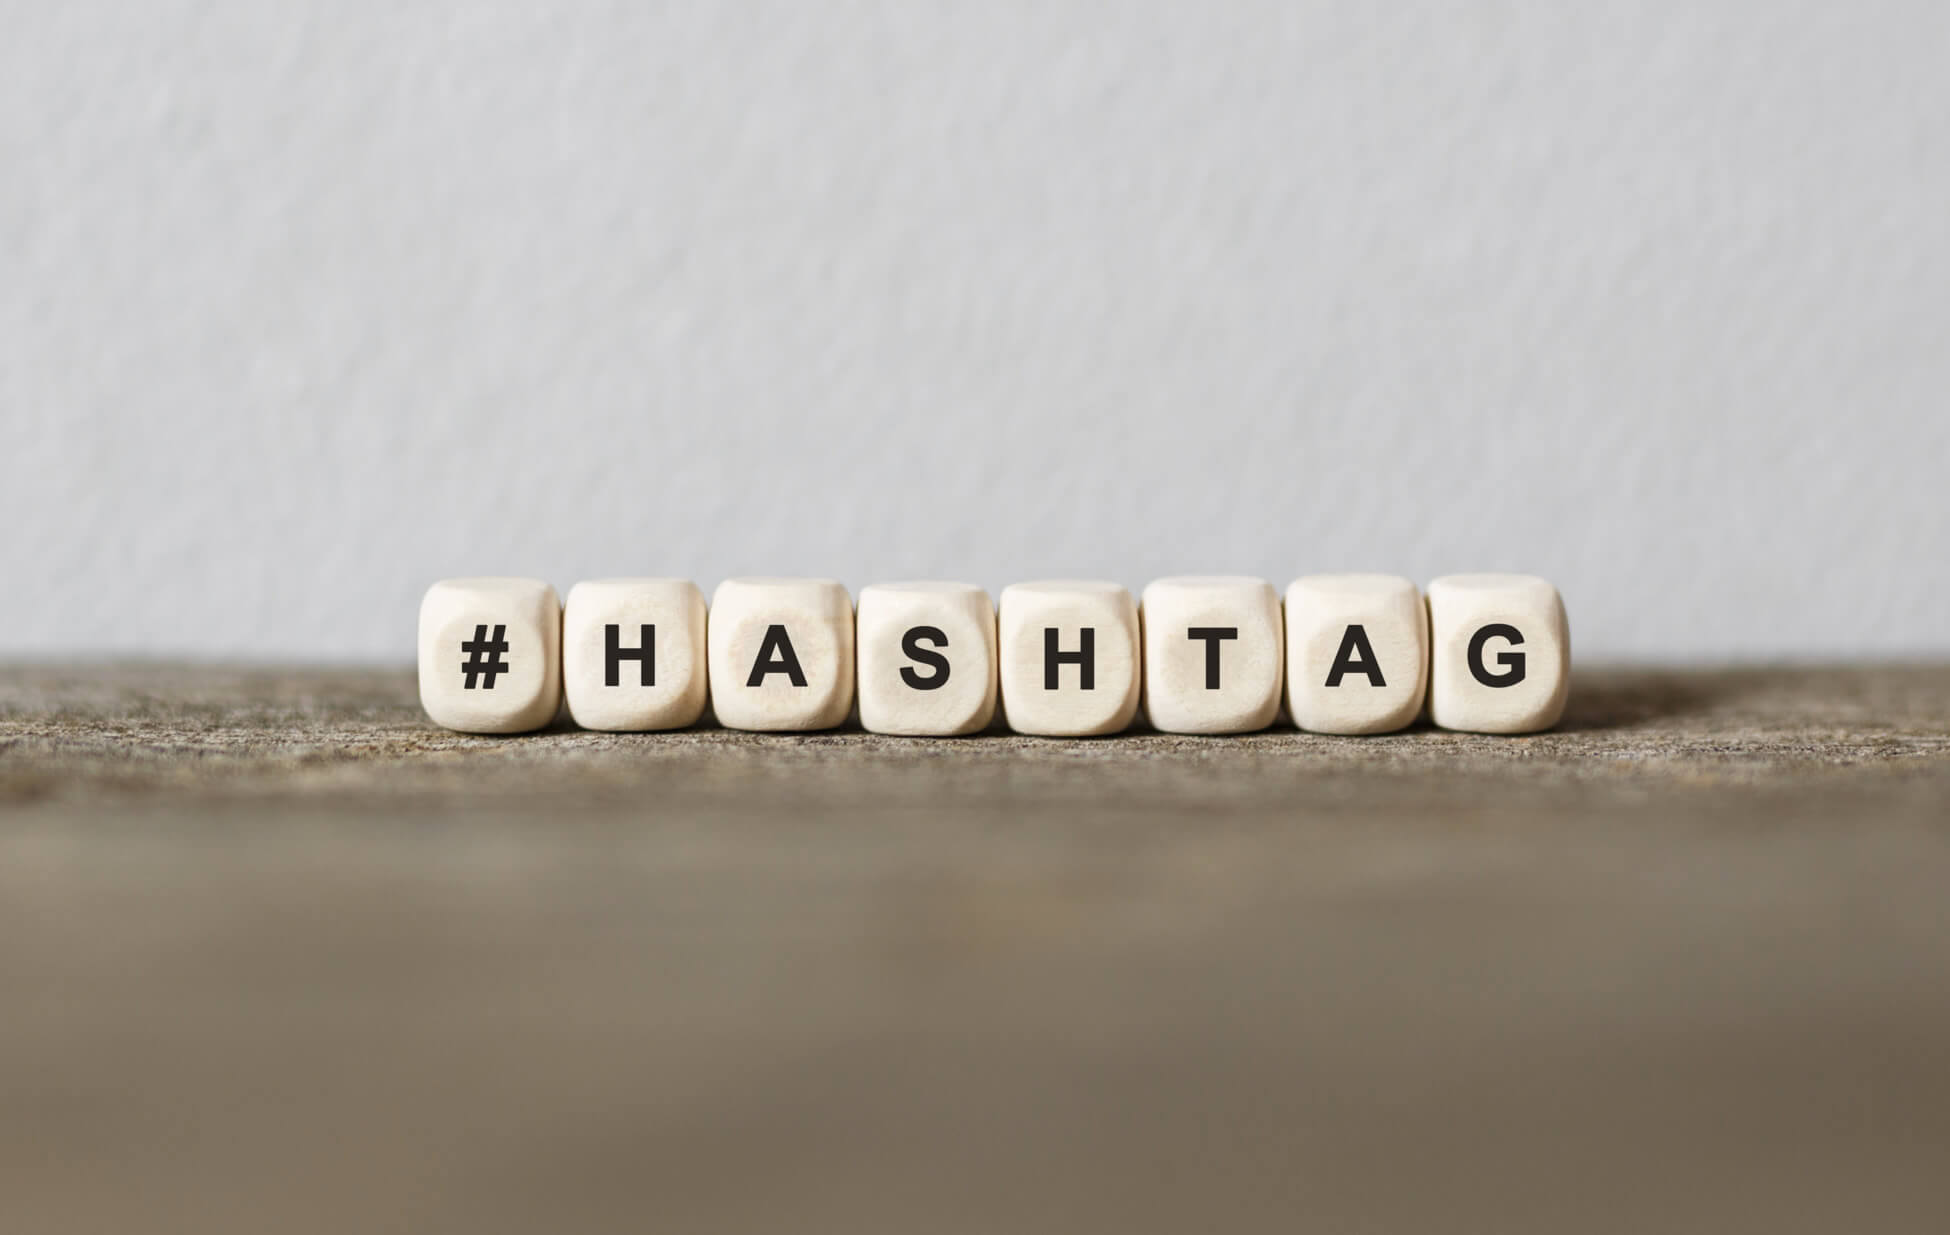 Hashtag ist eine Zeichenkombination, die aus einem Wort und dem vorangestellten Doppelkreuz # besteht